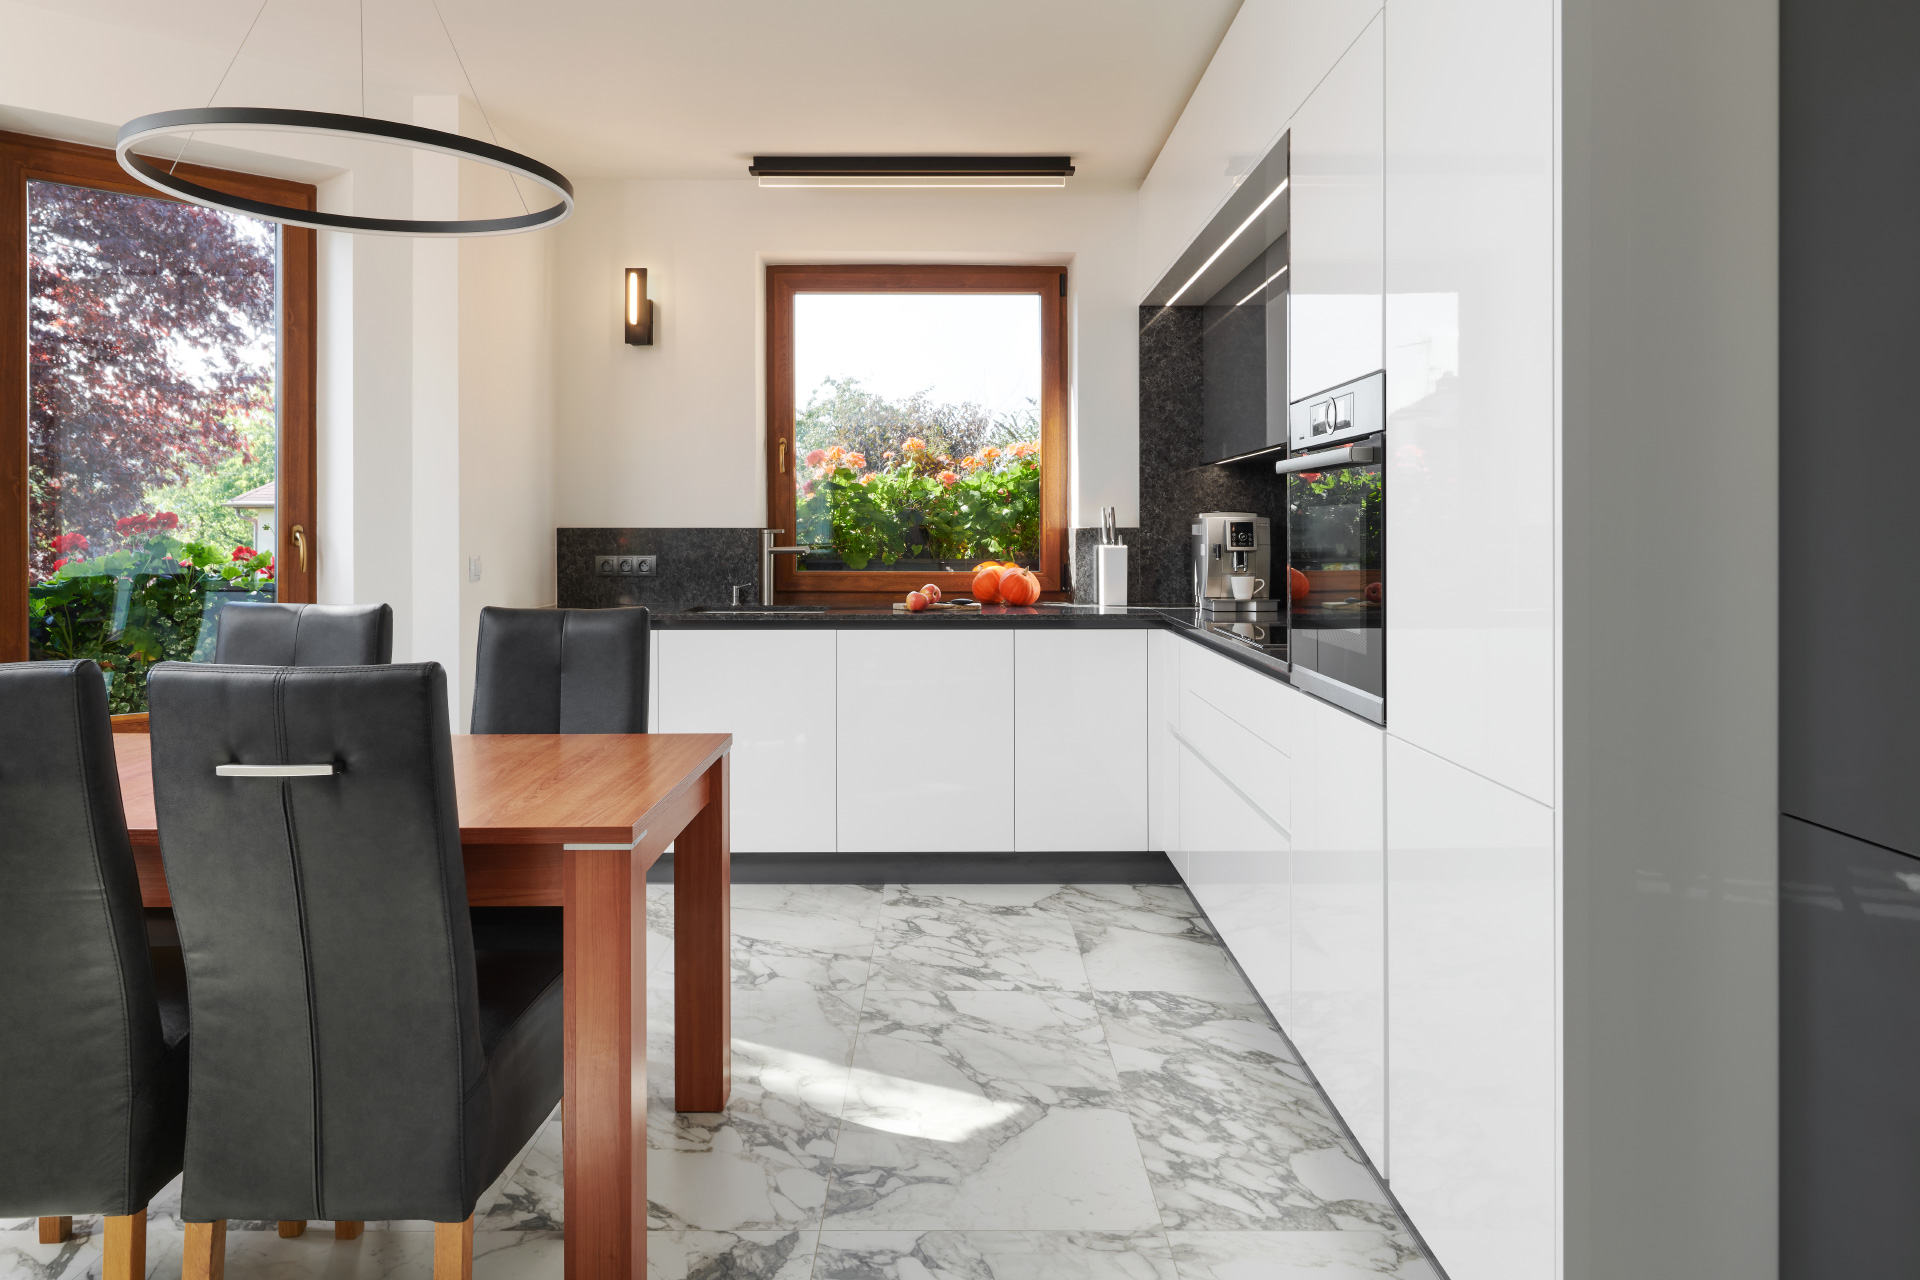 Hanák nábytok realizácia interiéru biely lak kuchyne ELITE